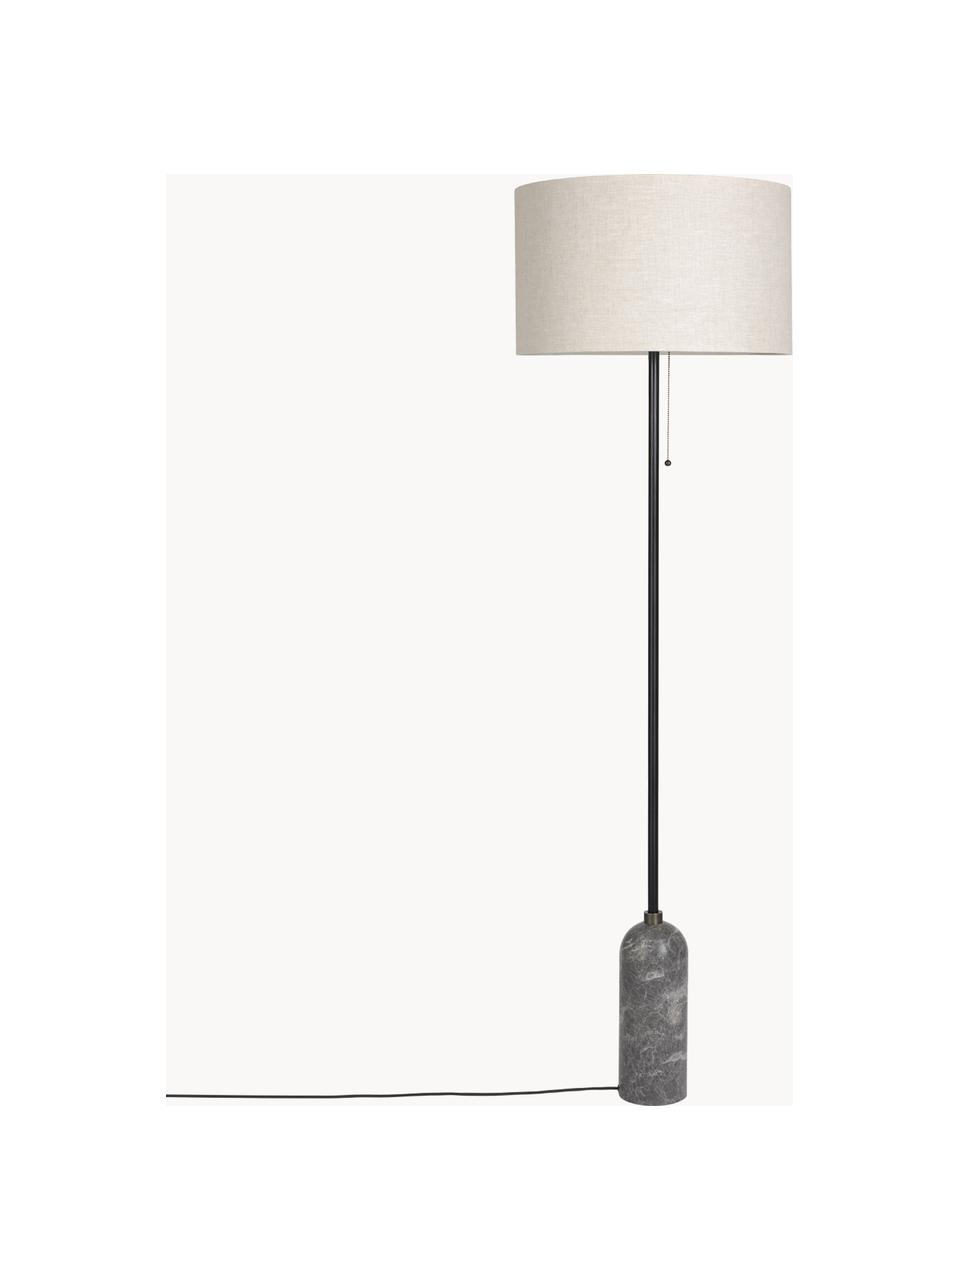 Dimmbare Stehlampe Gravity mit Marmorfuss, Lampenschirm: Stoff, Dekor: Messing, Hellbeige, Dunkelgrau marmoriert, H 169 cm